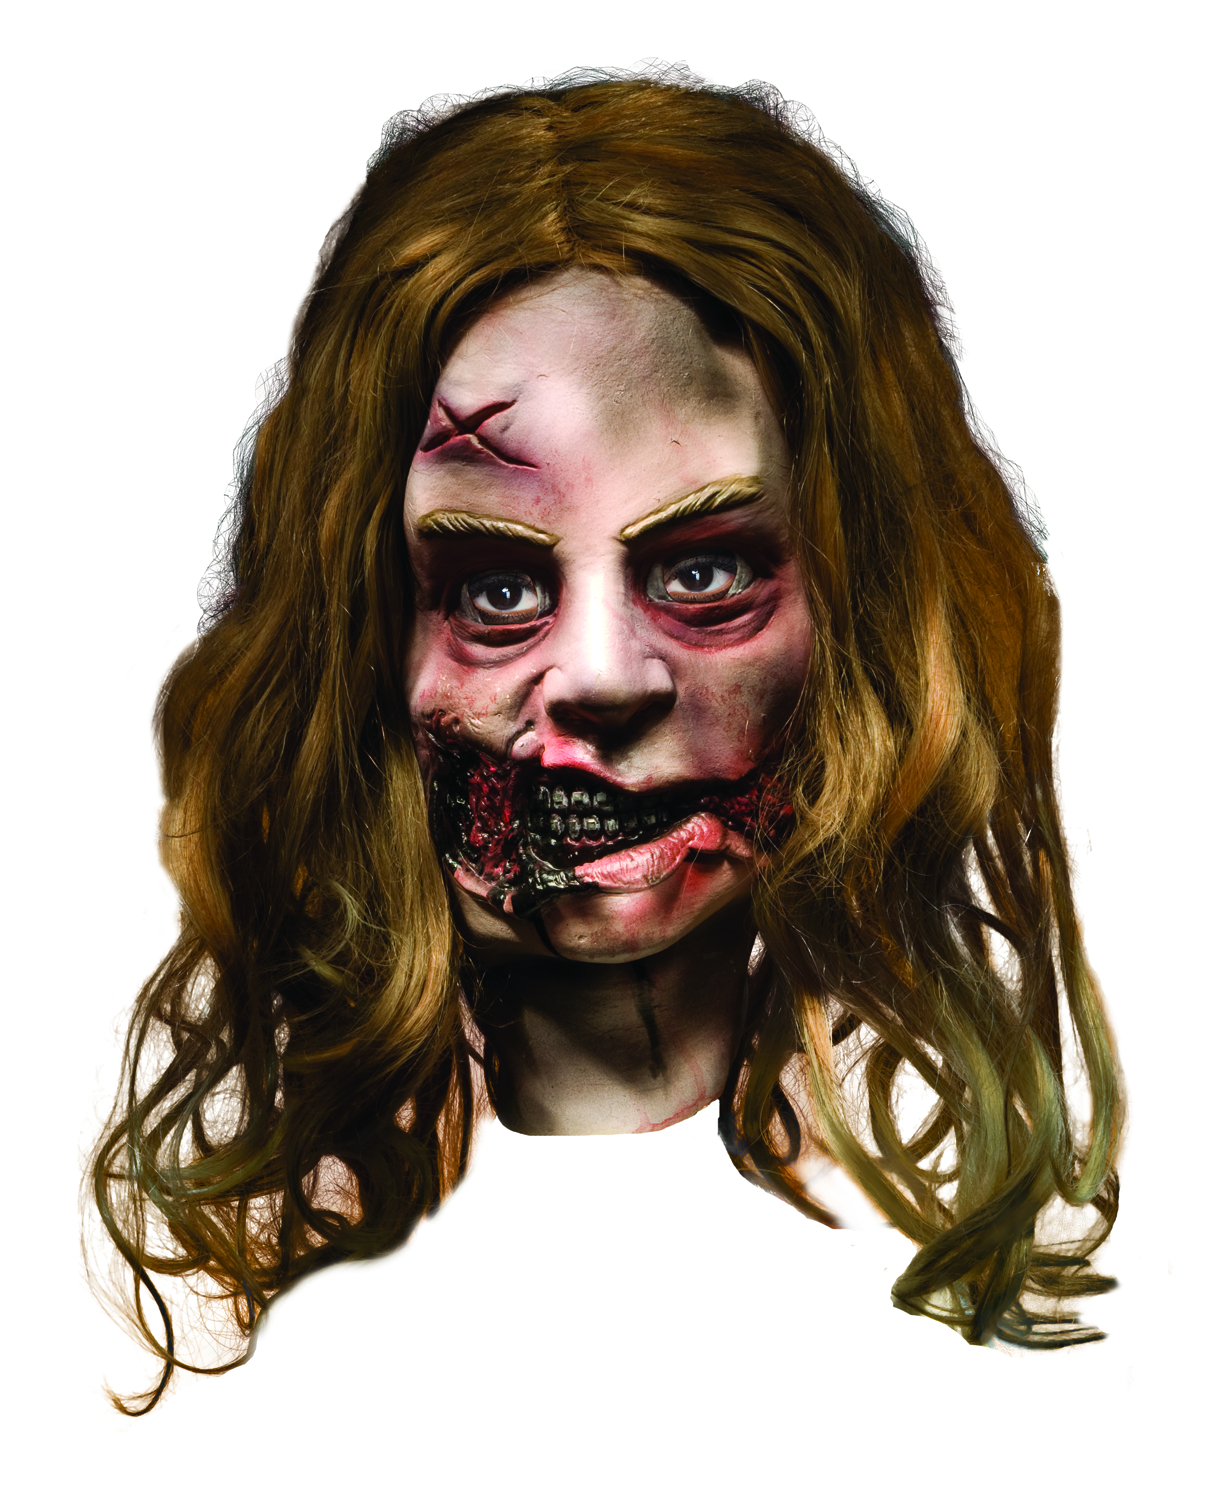 female zombie walking